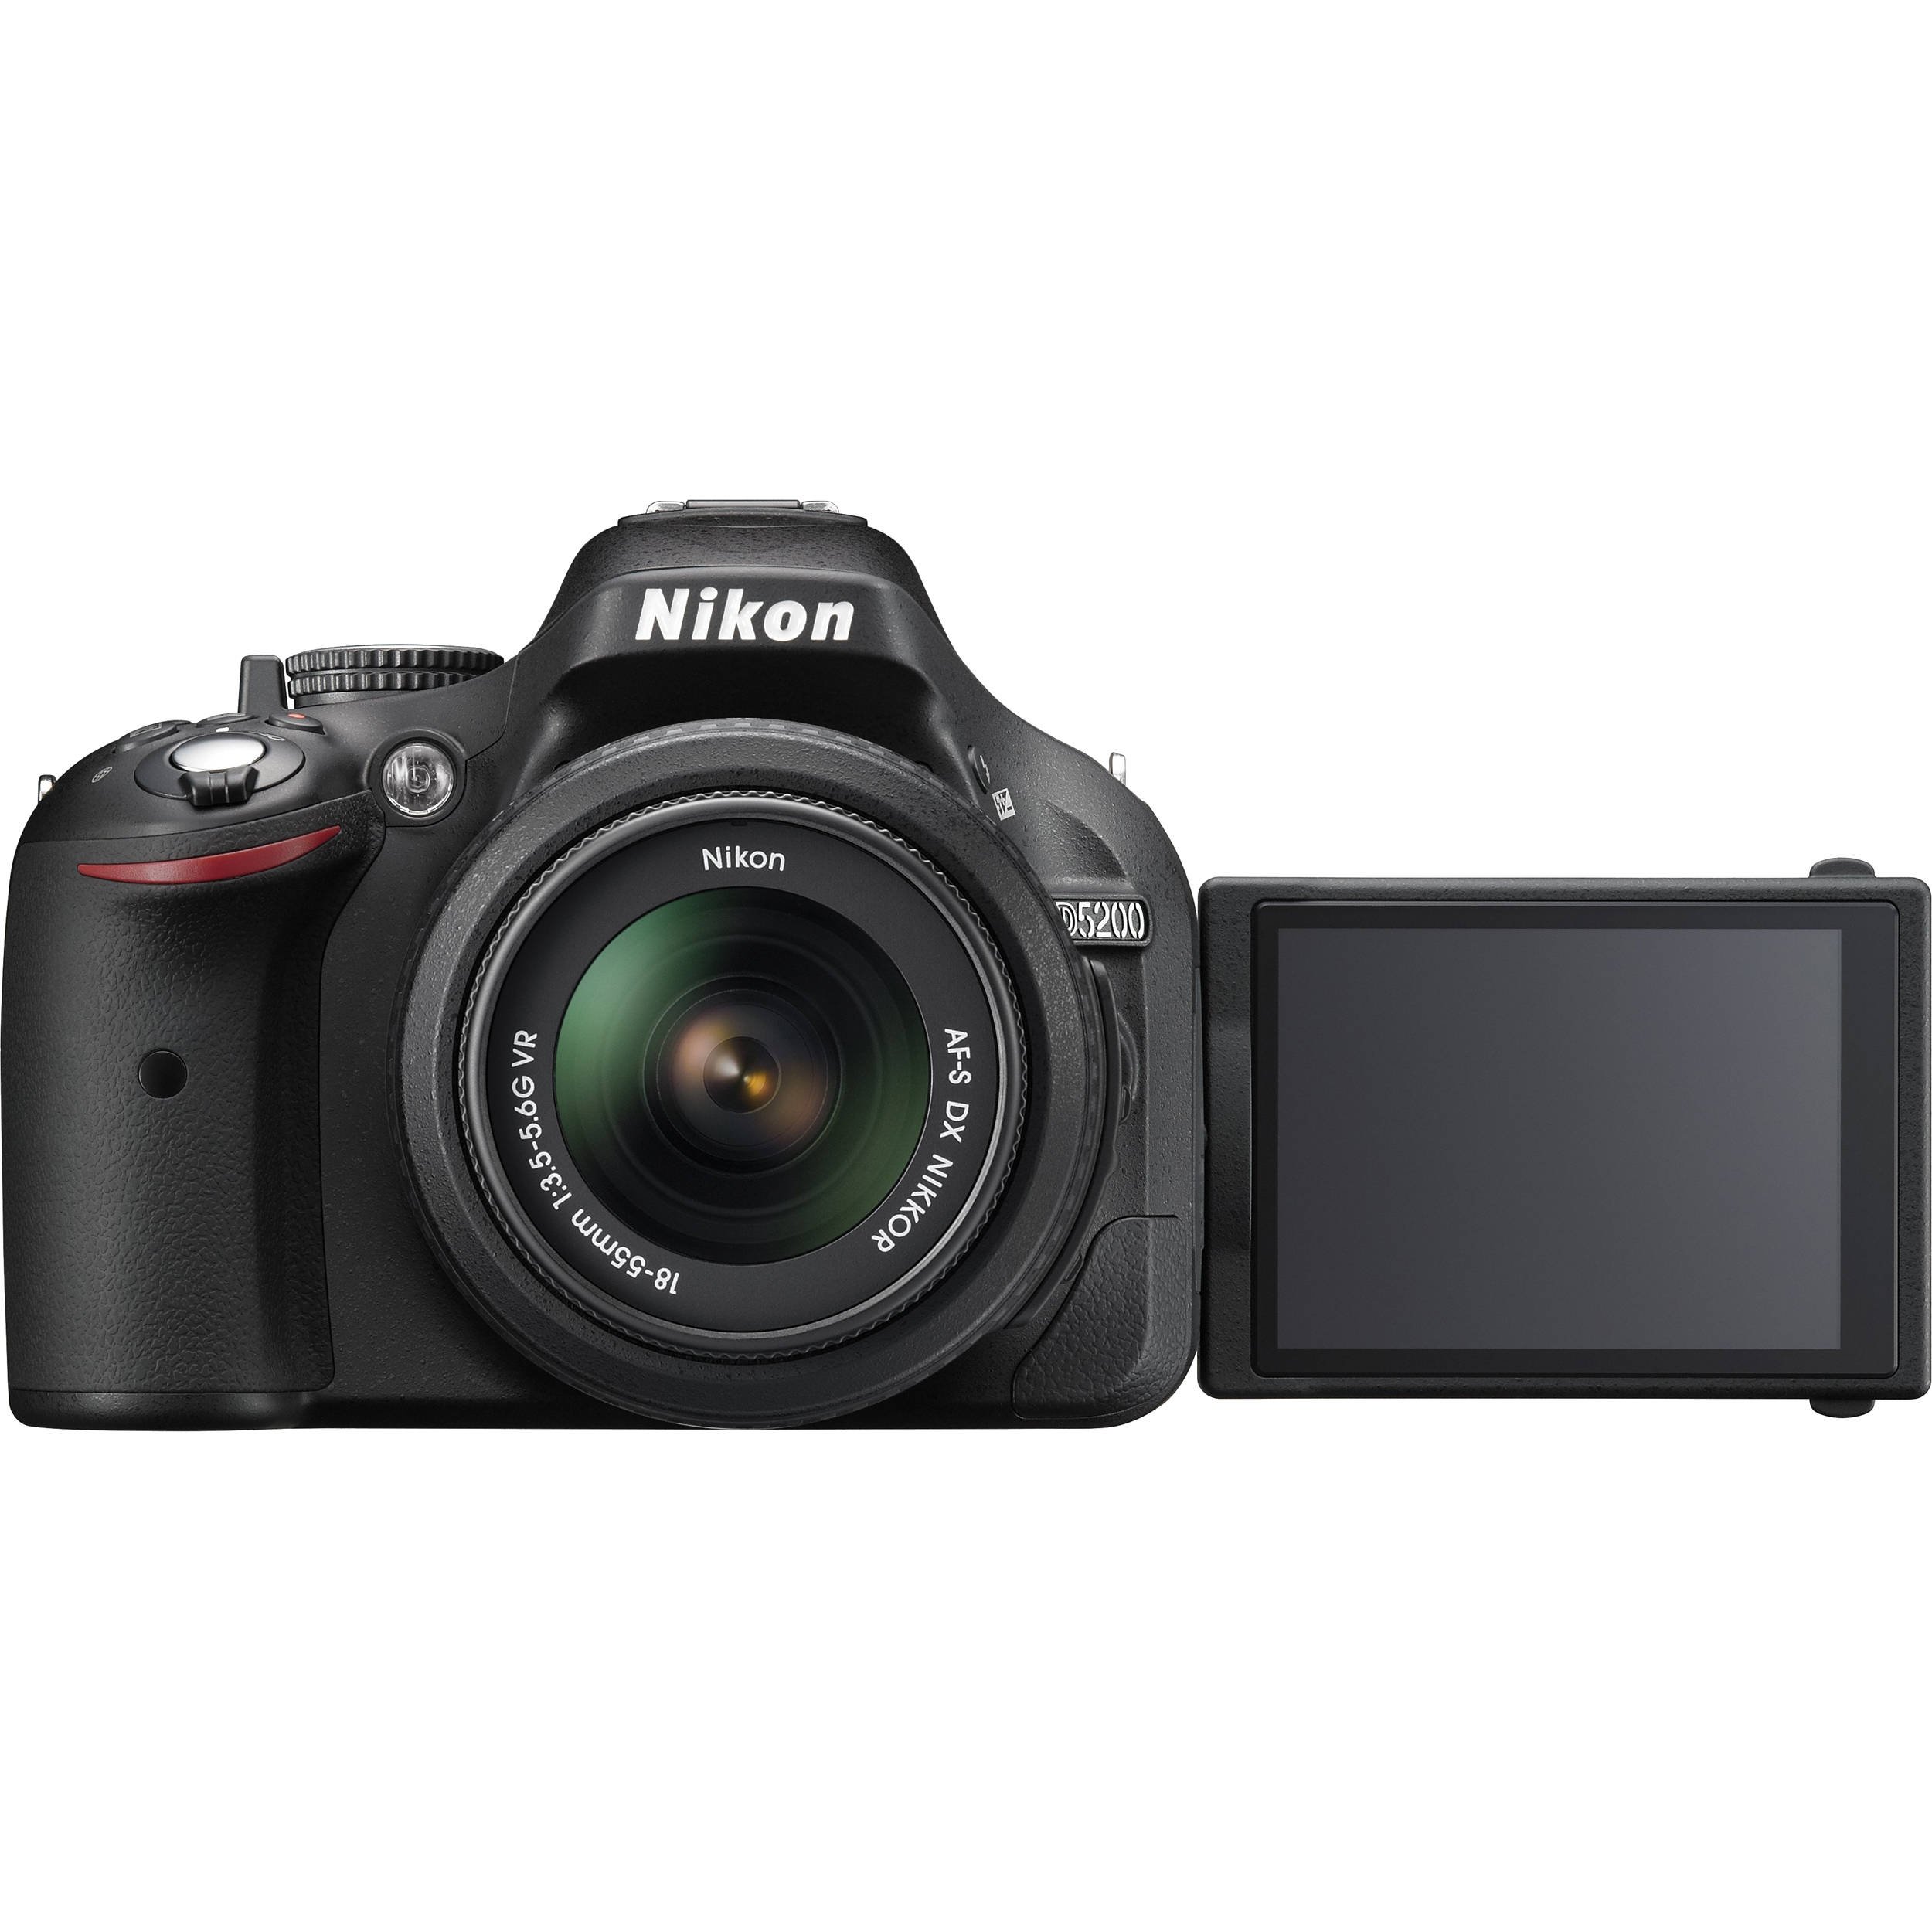 Nikon D5200 24.1 MP CMOS Digital SLR with 18-105mm f/3.5-5.6 AF-S DX VR ED NIKKOR Zoom Lens (Black) (Discontinued by Manufacturer)